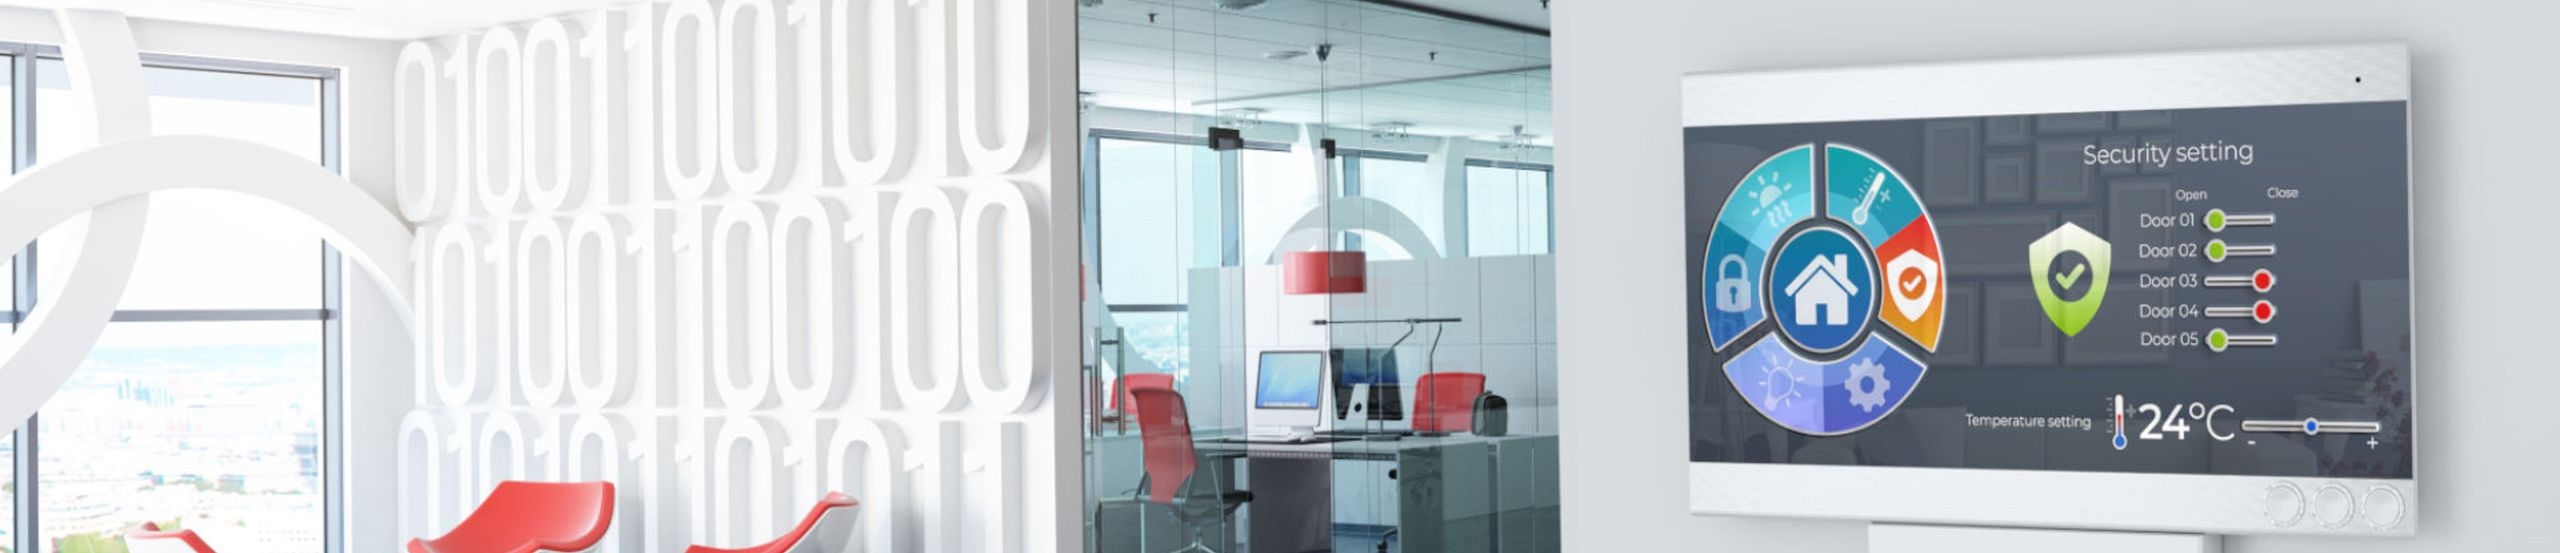 Modernes Büro mit Schalttafel zur Steuerung von Beleuchtung, Temperatur, Luftqualität, Zugang und Sicherheit.